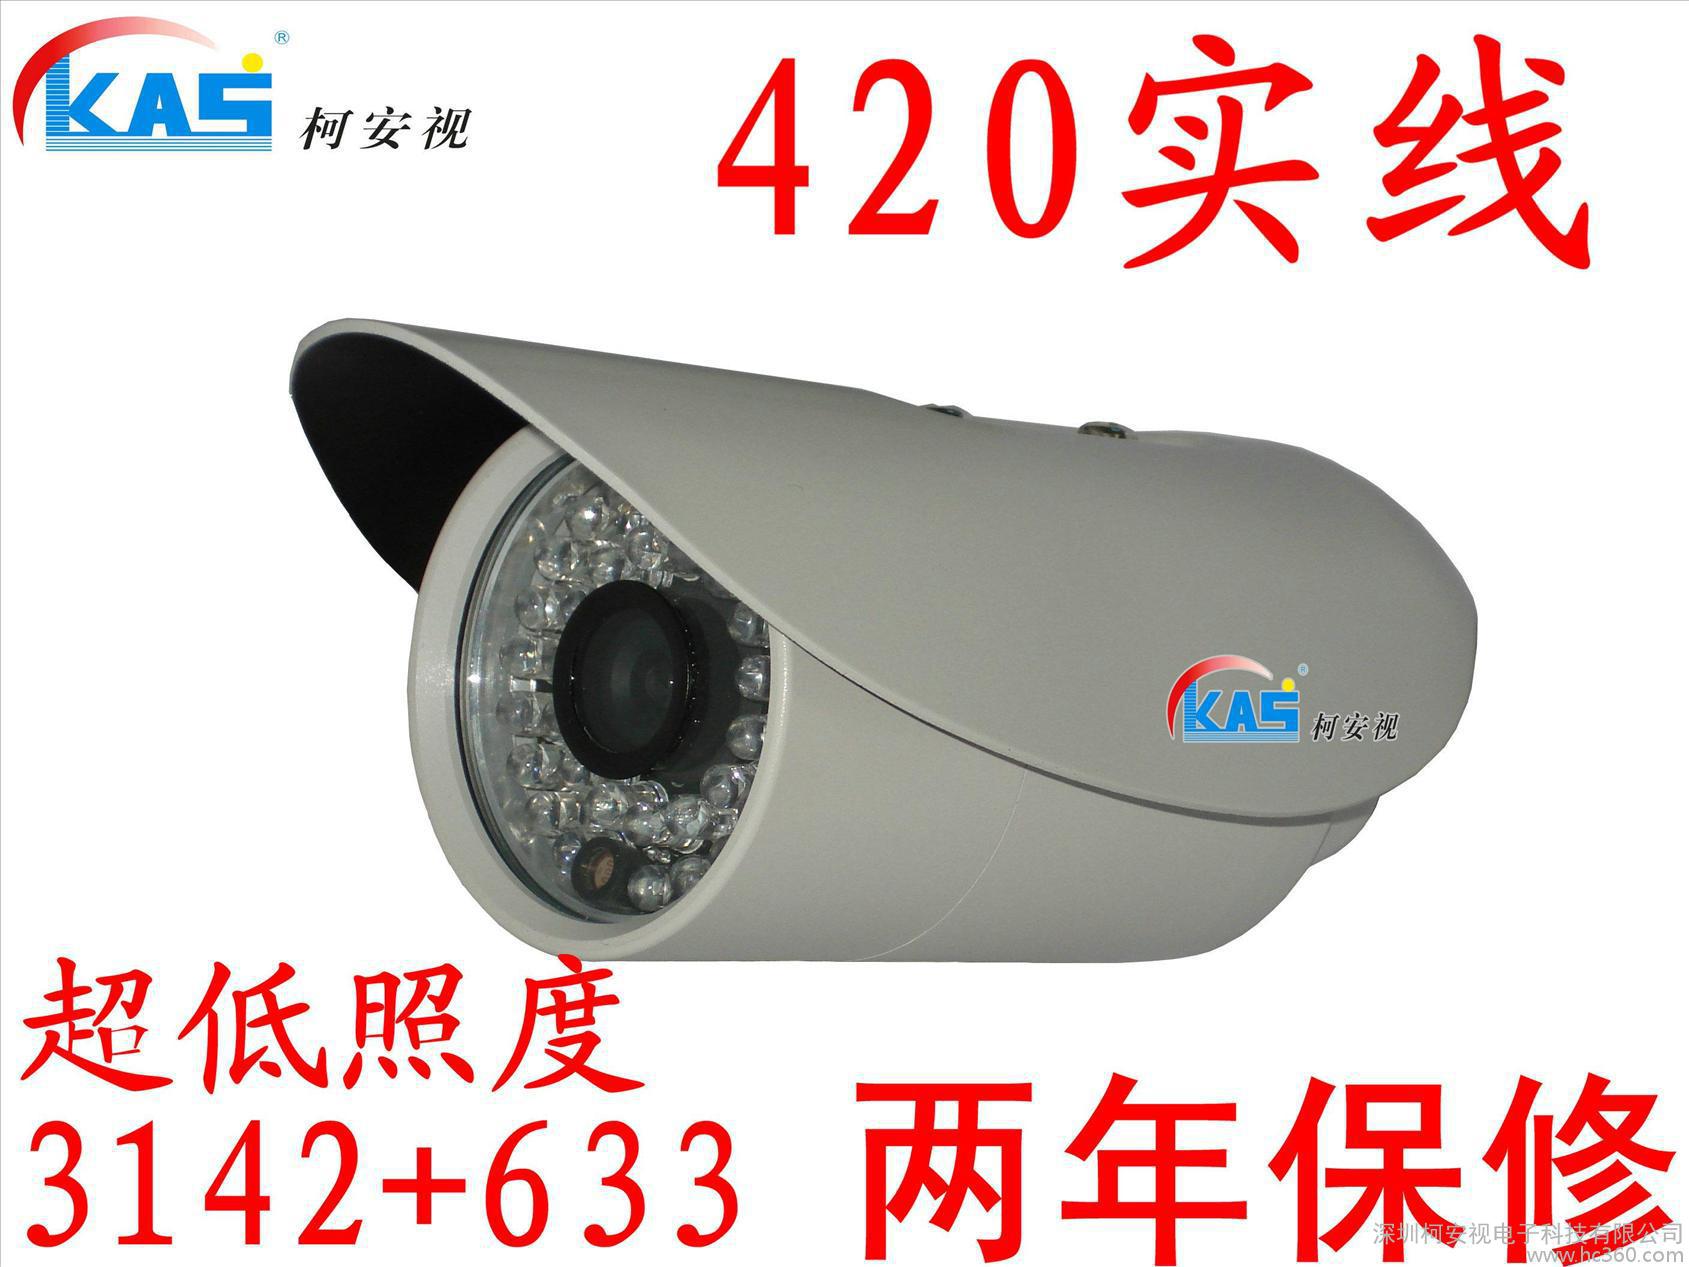 柯安视 监控摄像机 监控 摄像头 红外 夜视 监控设备 KAS-TK367